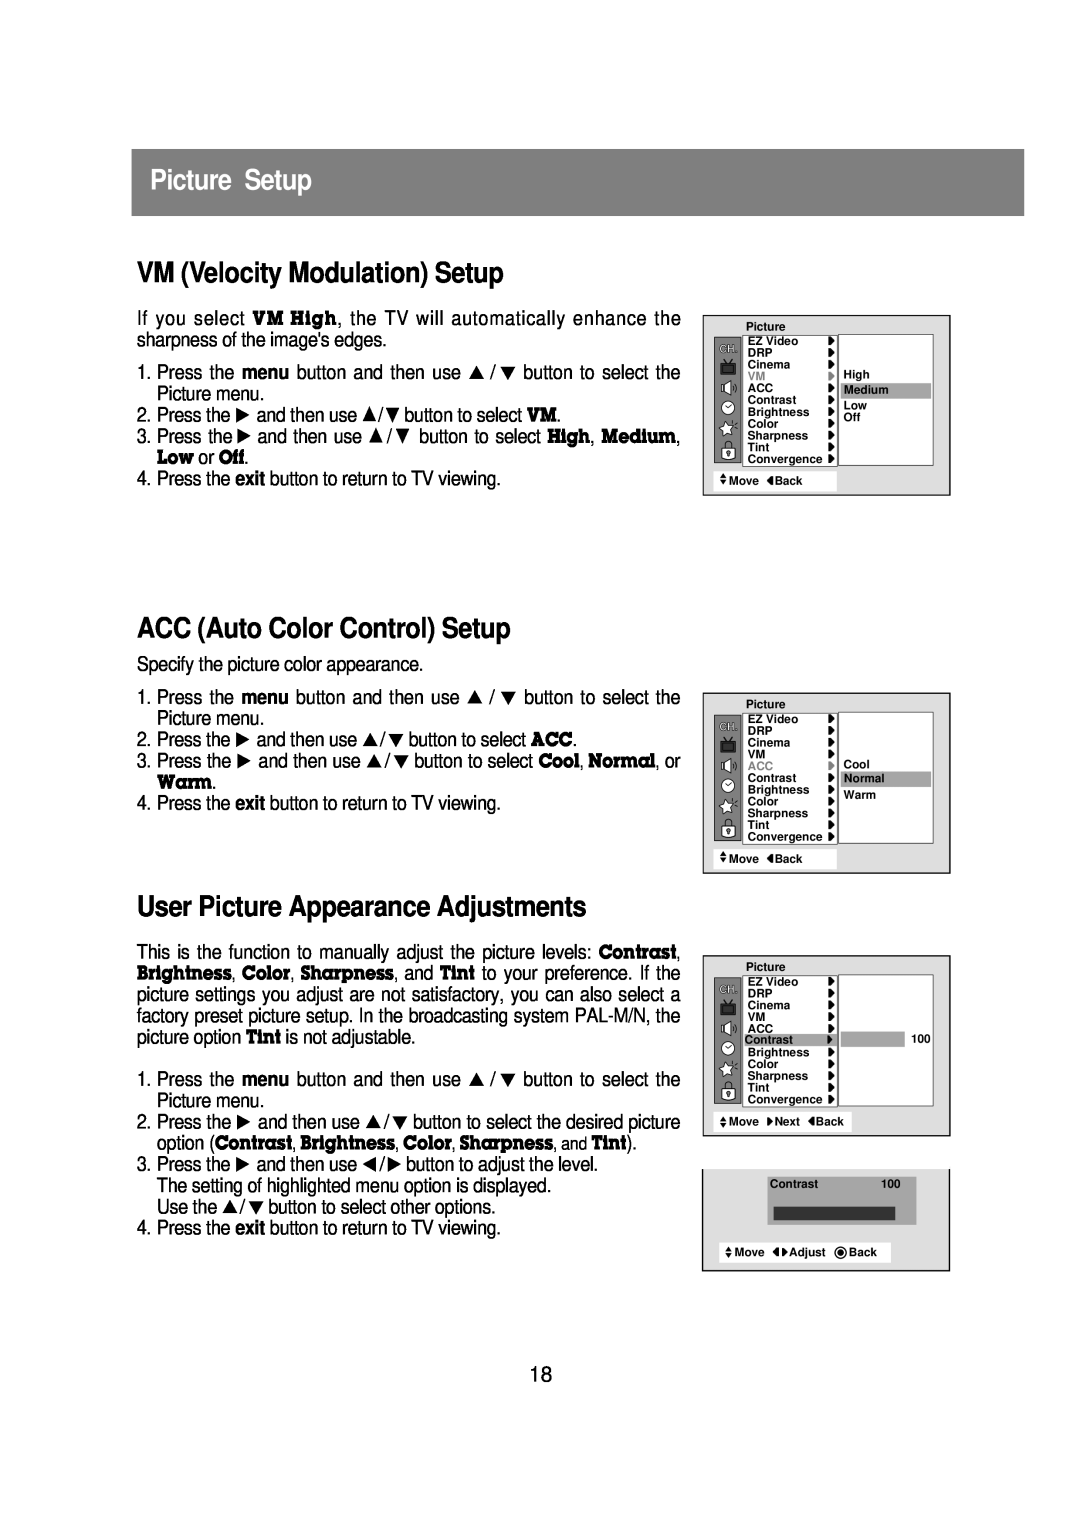 Zenith R40W46 warranty Picture Setup, VM Velocity Modulation Setup, ACC Auto Color Control Setup 